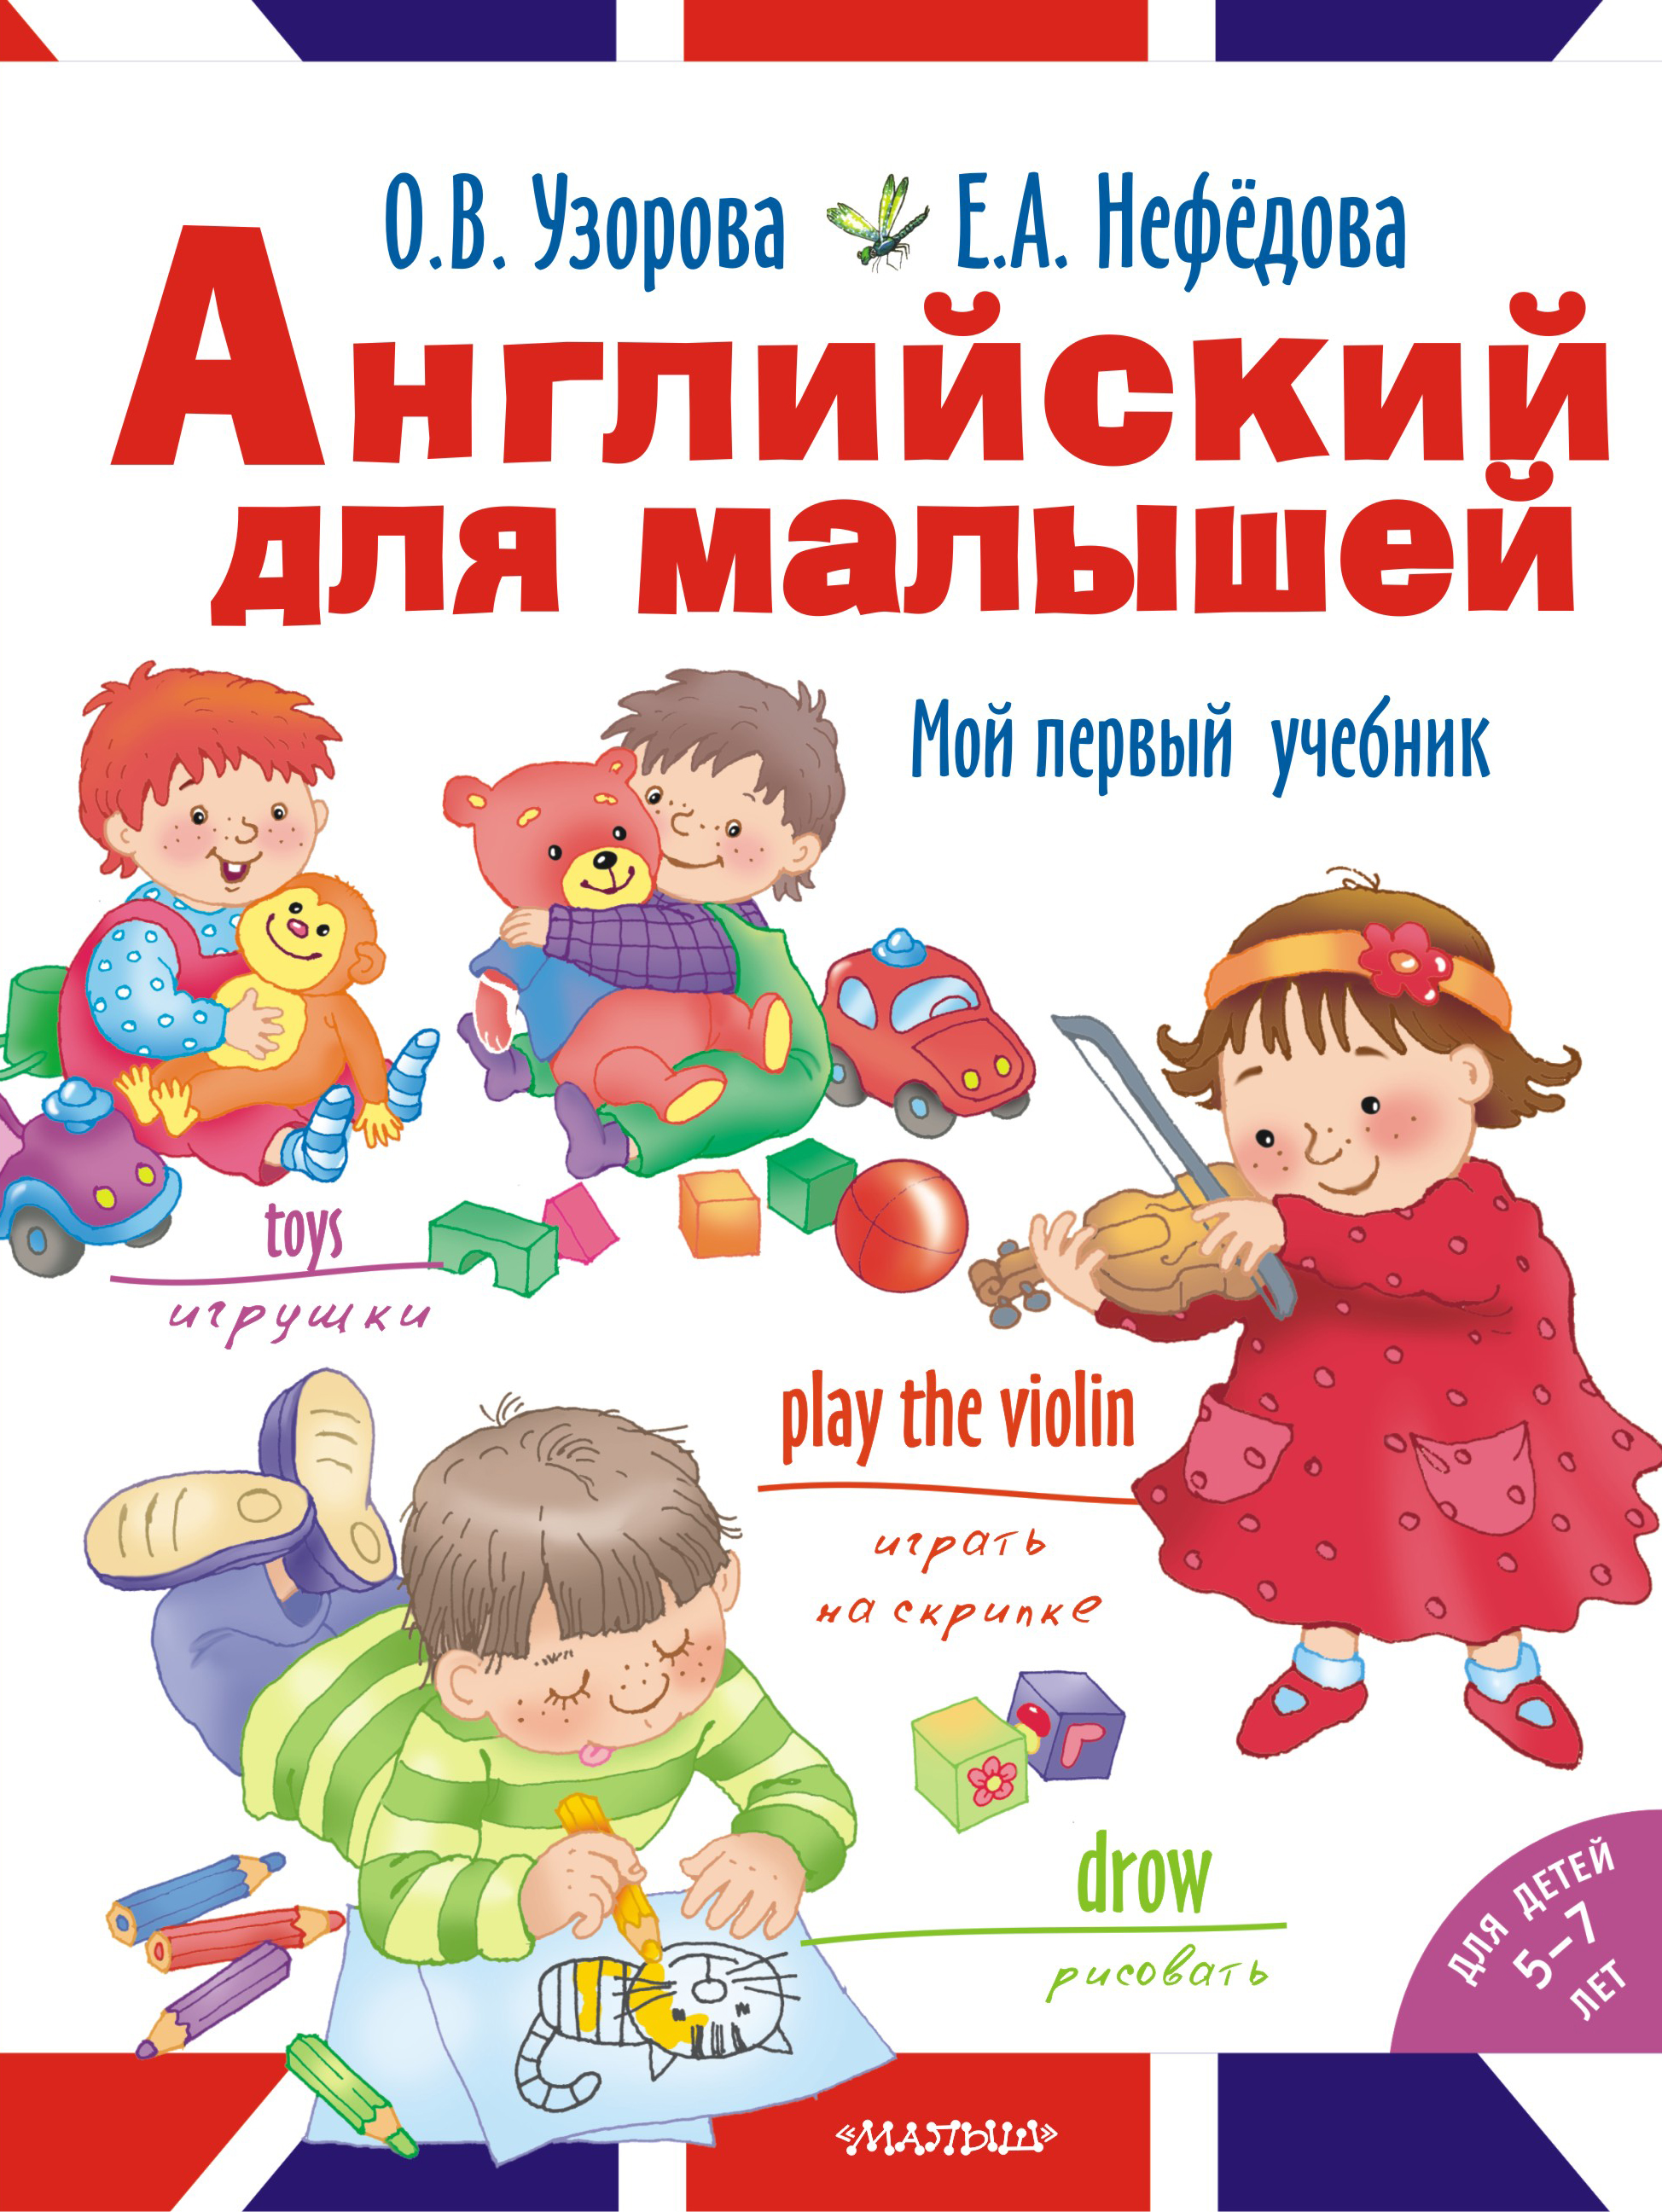 Учебники и книги для детей и взрослых по английскому языку ...